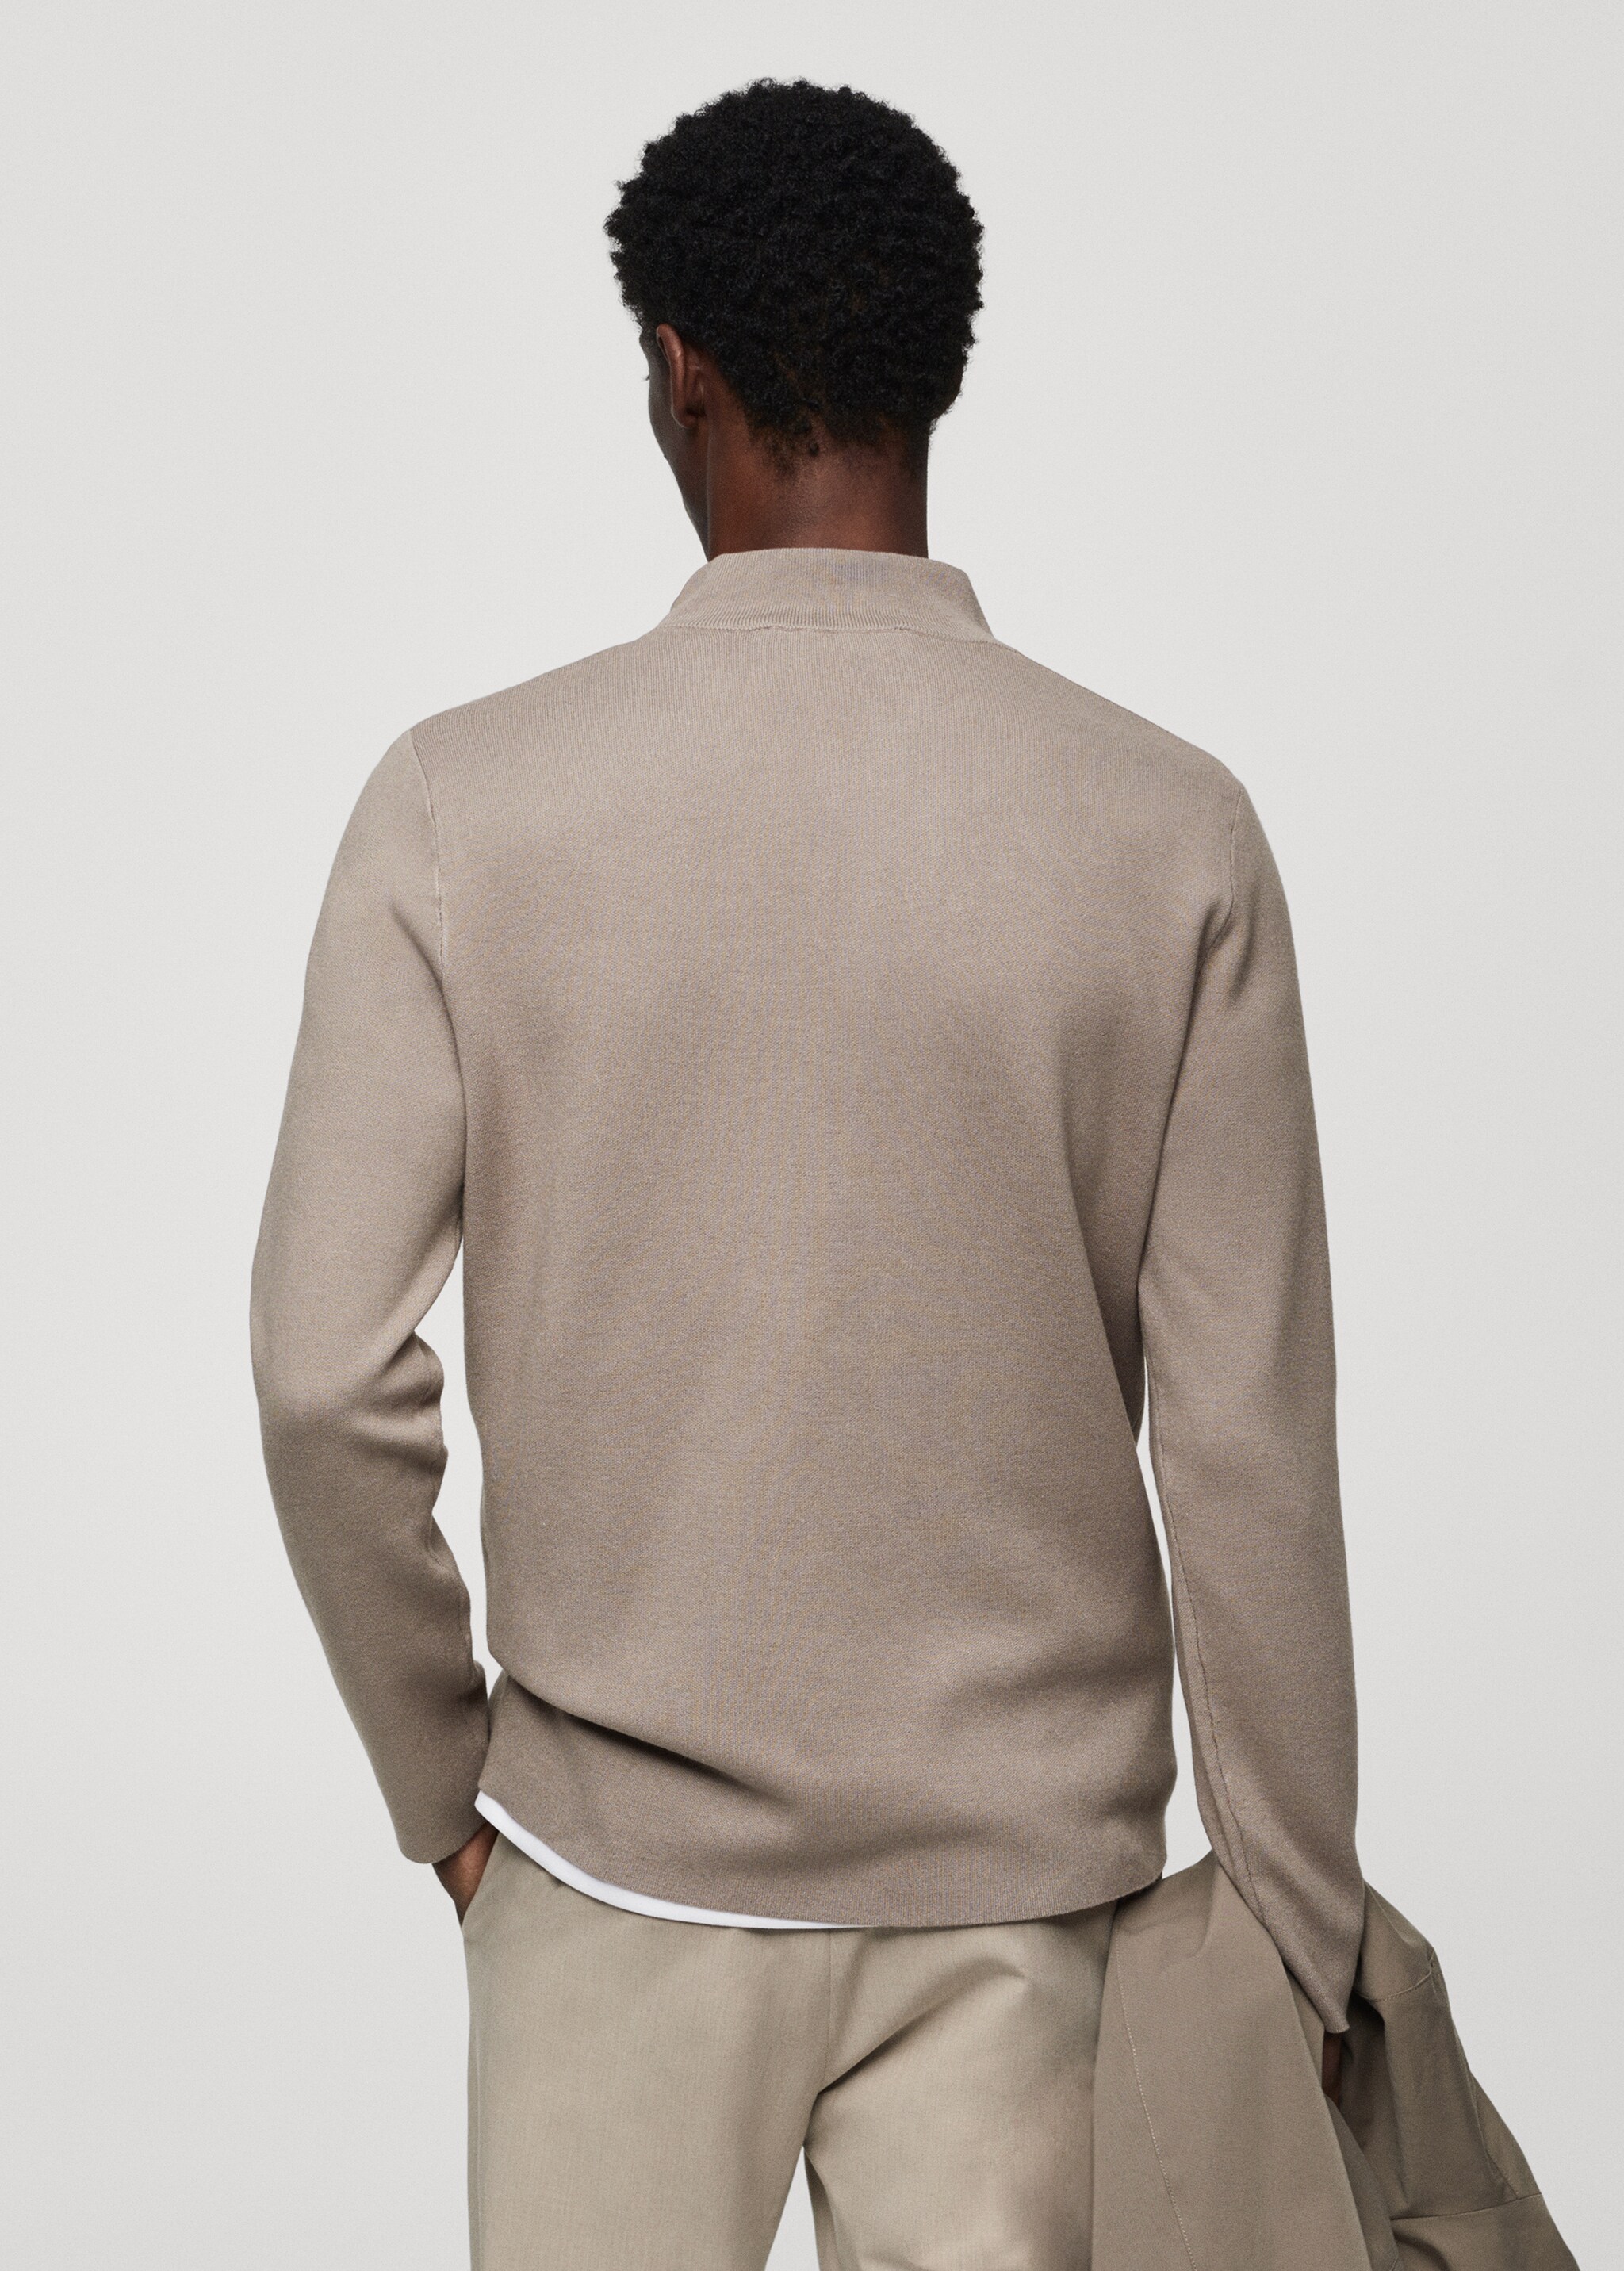 Pullover mit halbhohem Zip-Kragen - Rückseite des Artikels